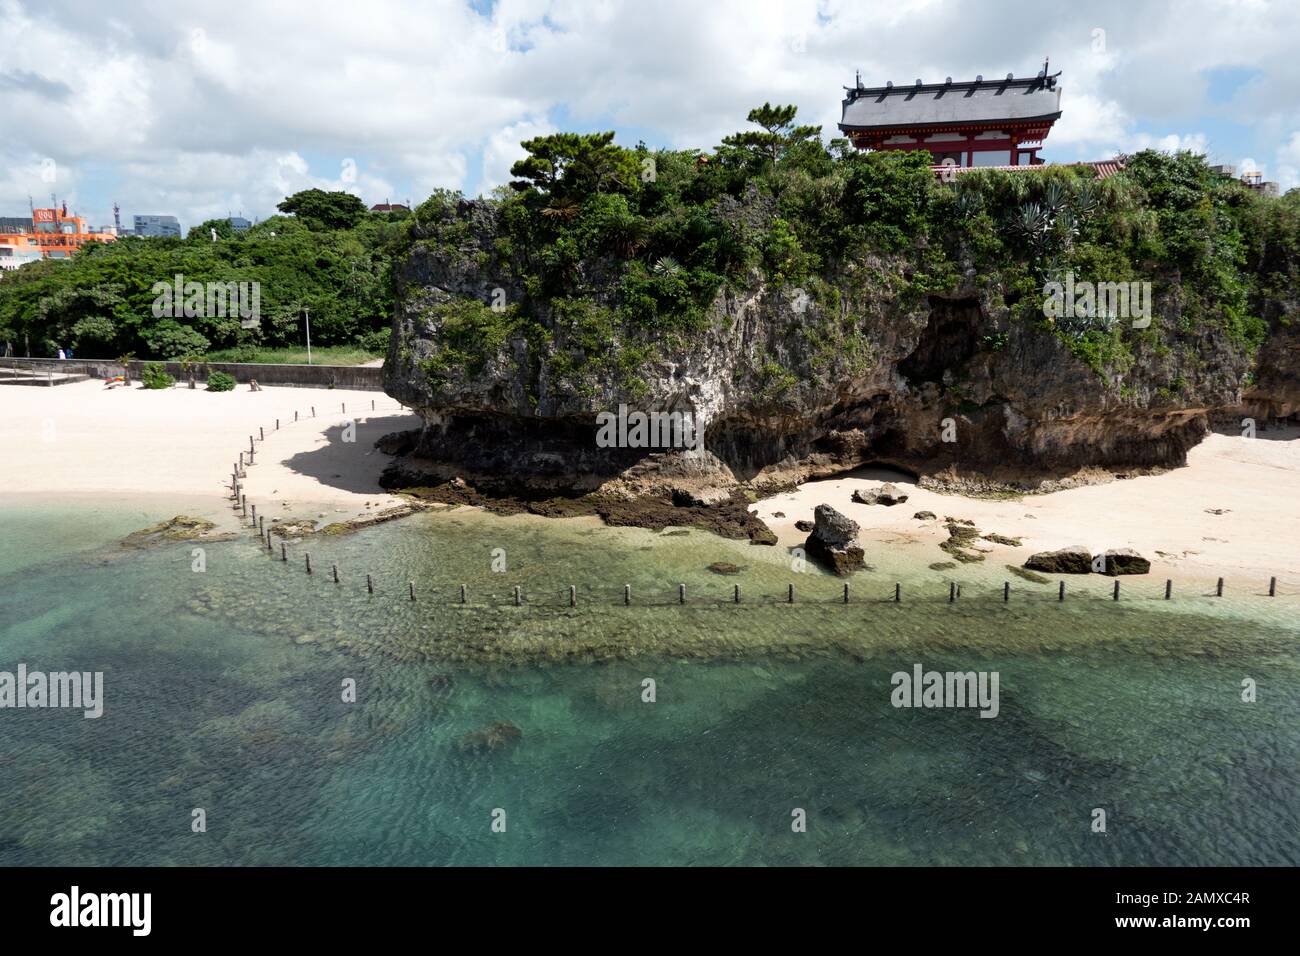 Naminoue santuario vicino alla spiaggia di Naha, Okinawa, Giappone, Asia. Gente giapponese nuotare, turisti rilassarsi durante le vacanze. Acqua di mare cristallina con r Foto Stock